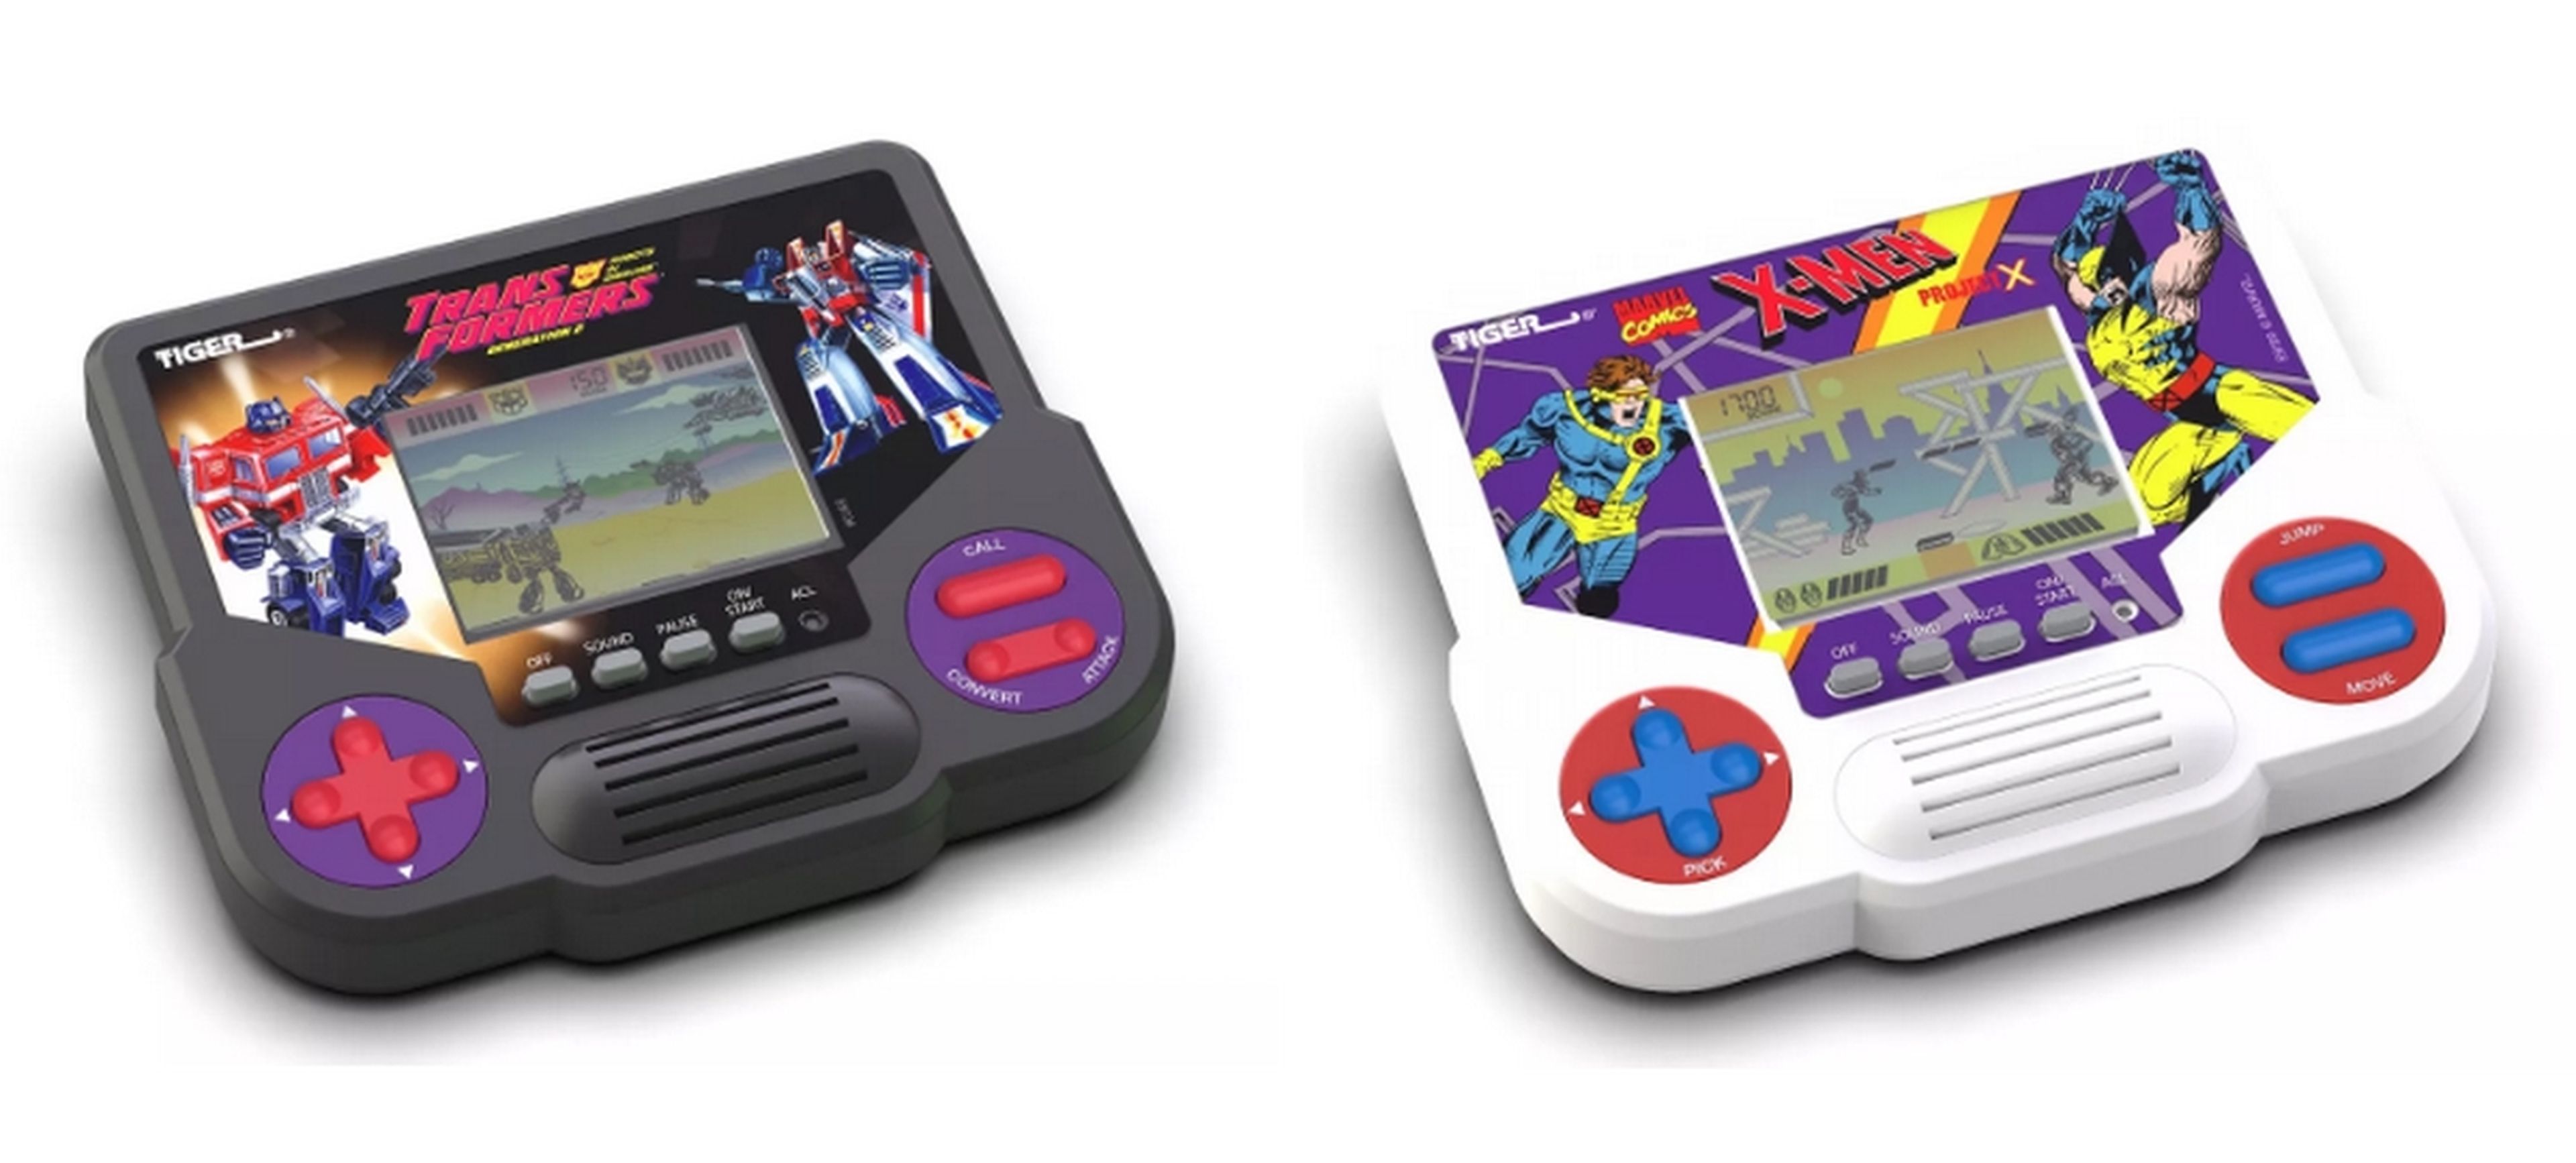 Si jugaste con estas consolas monocromas en los años 90, Hasbro las vuelve a poner a la venta